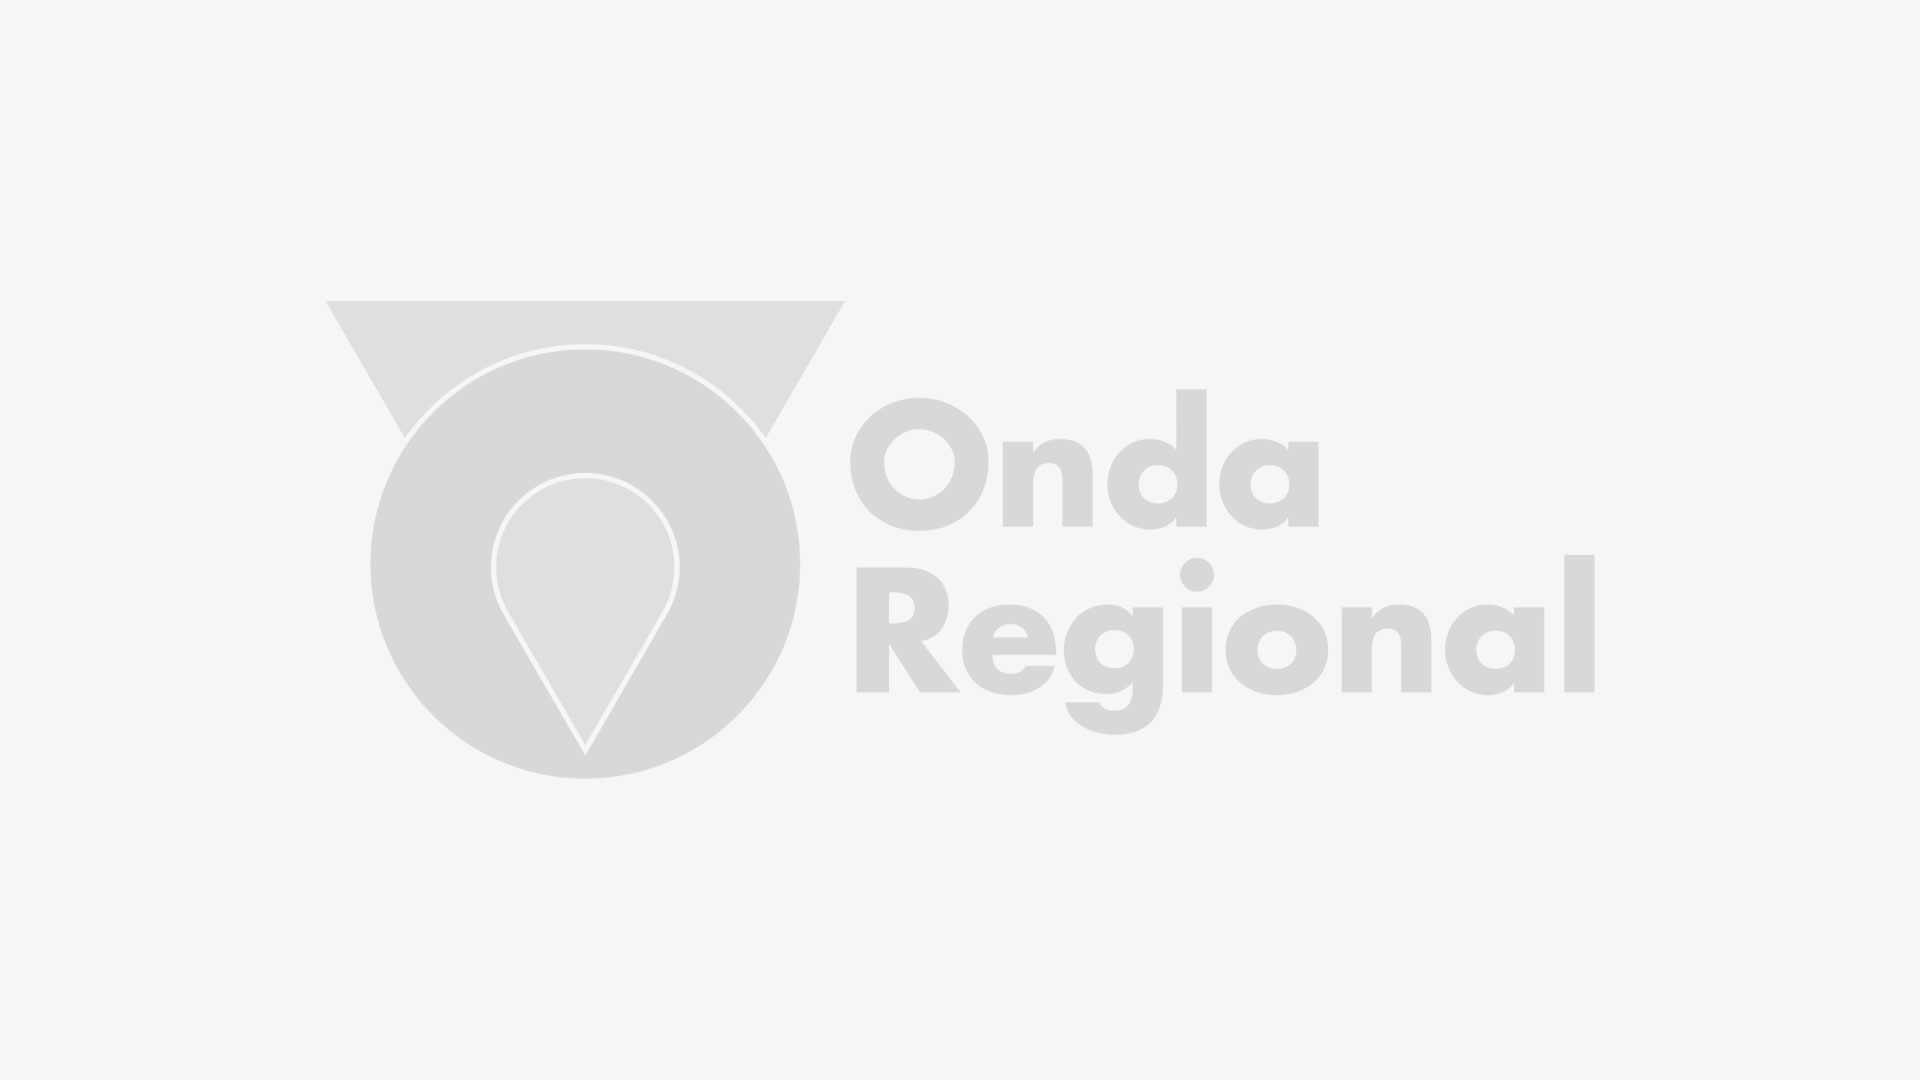 4,7 millones de desplazamientos por las carreteras de la Región de Murcia durante este verano